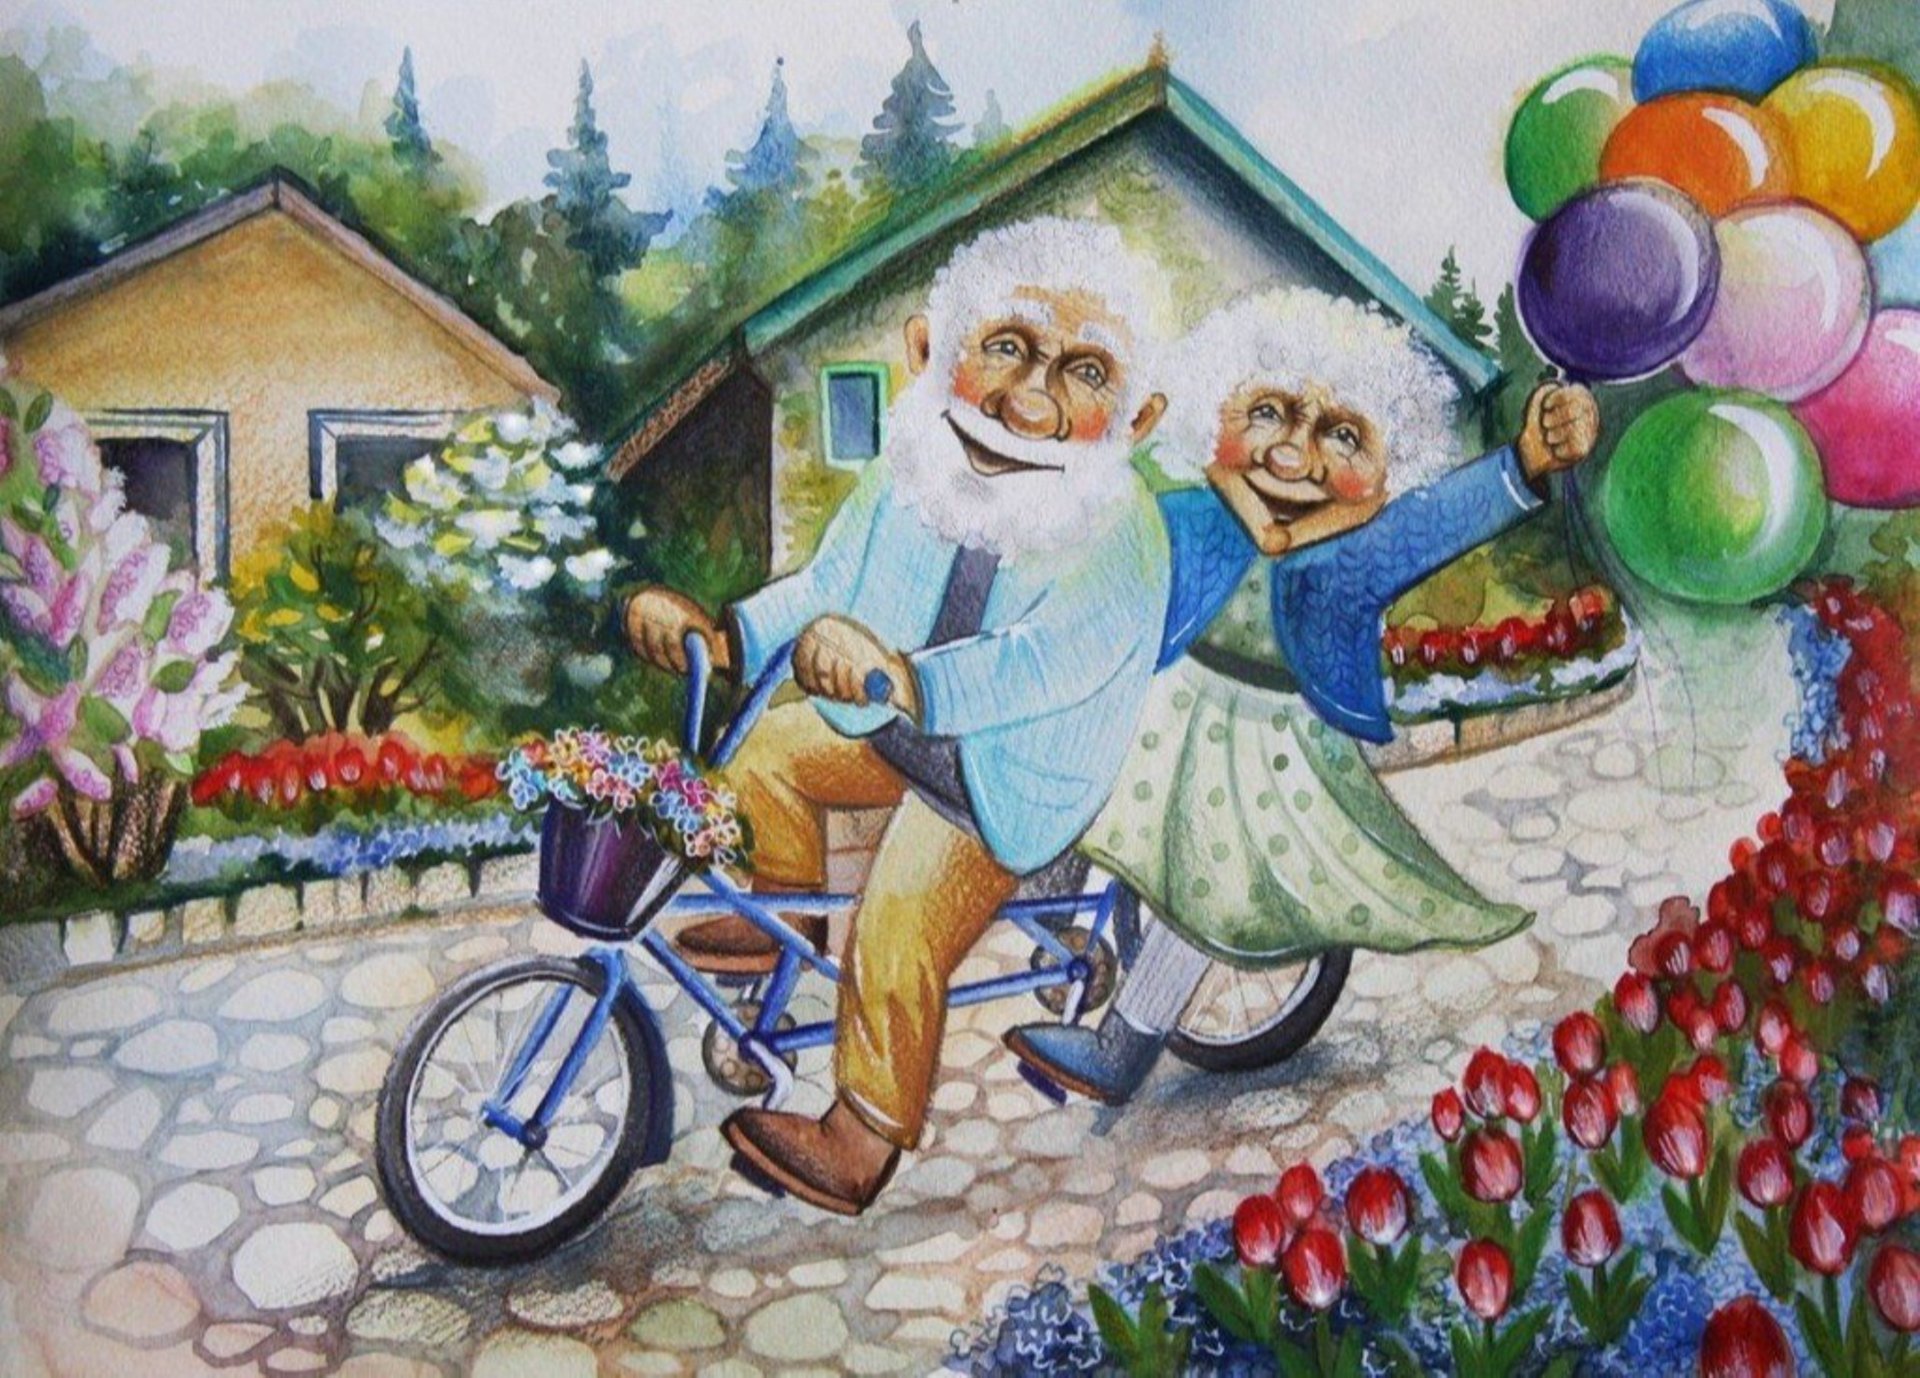 Праздник день внуков. Открытки для пожилых людей. Счастливые старики иллюстрации. Картины пожилых людей. Бабушка рядышком с дедушкой.